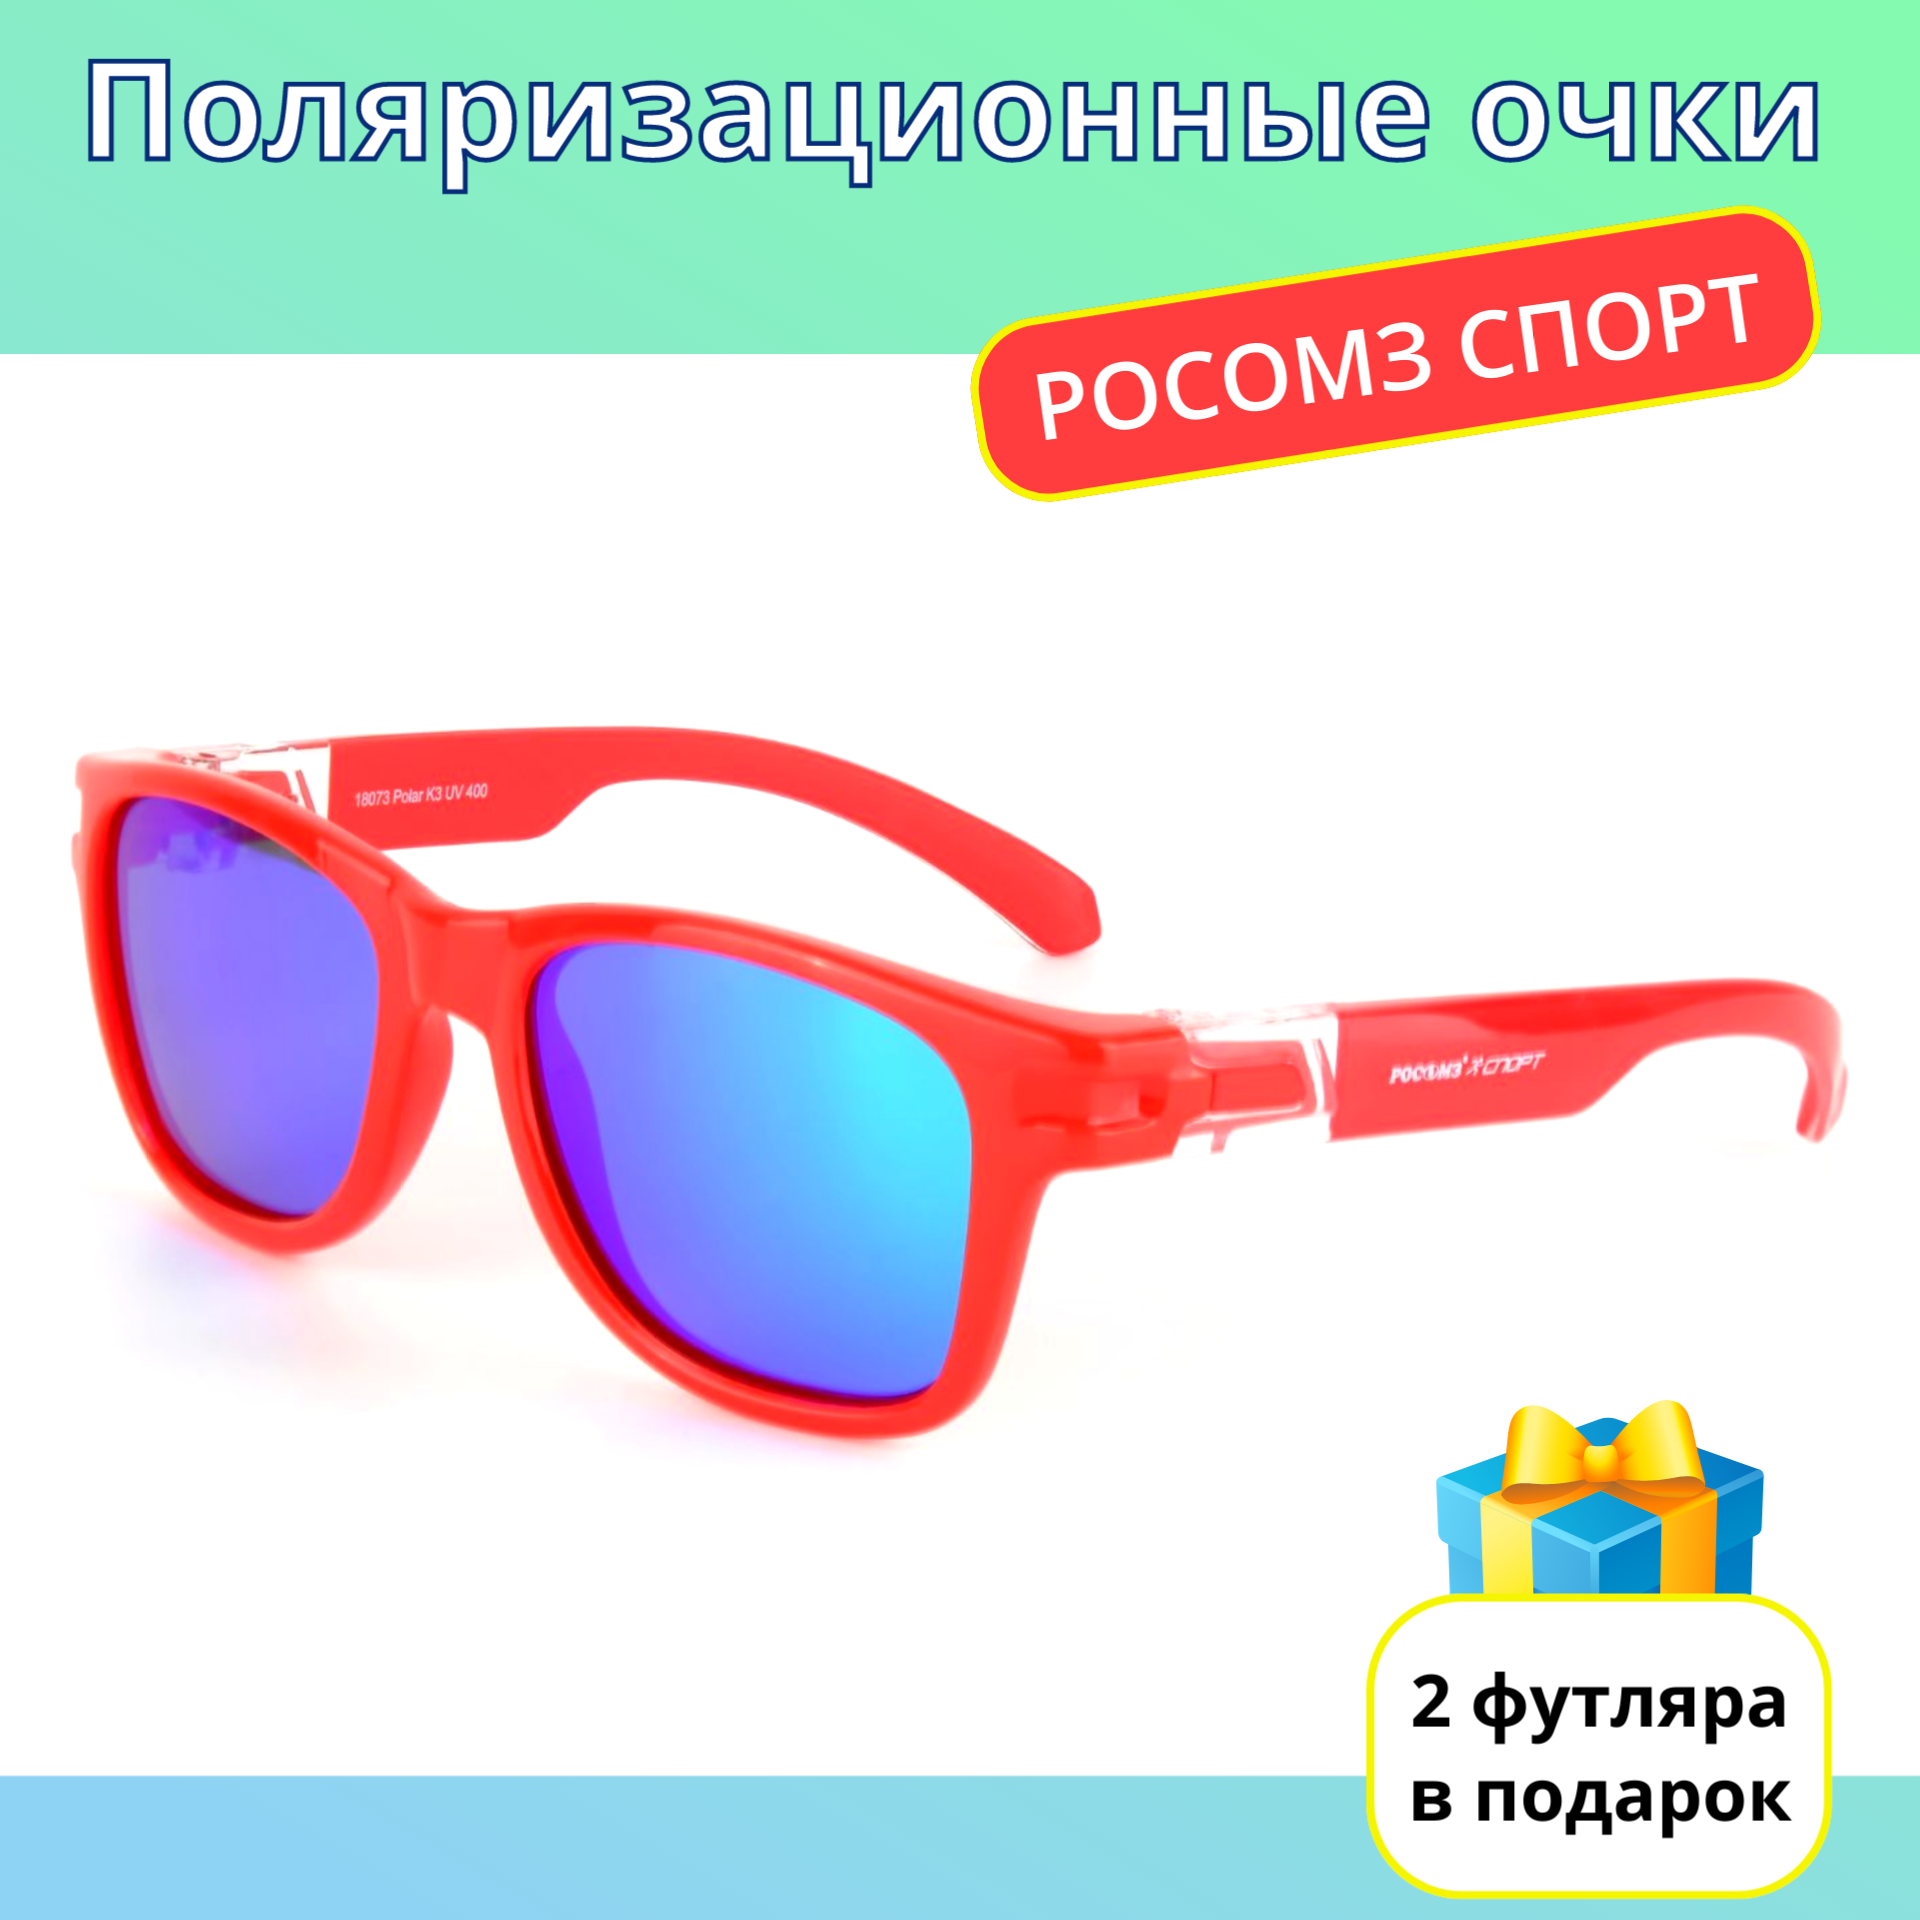 Солнцезащитные очки РОСОМЗ  Спорт